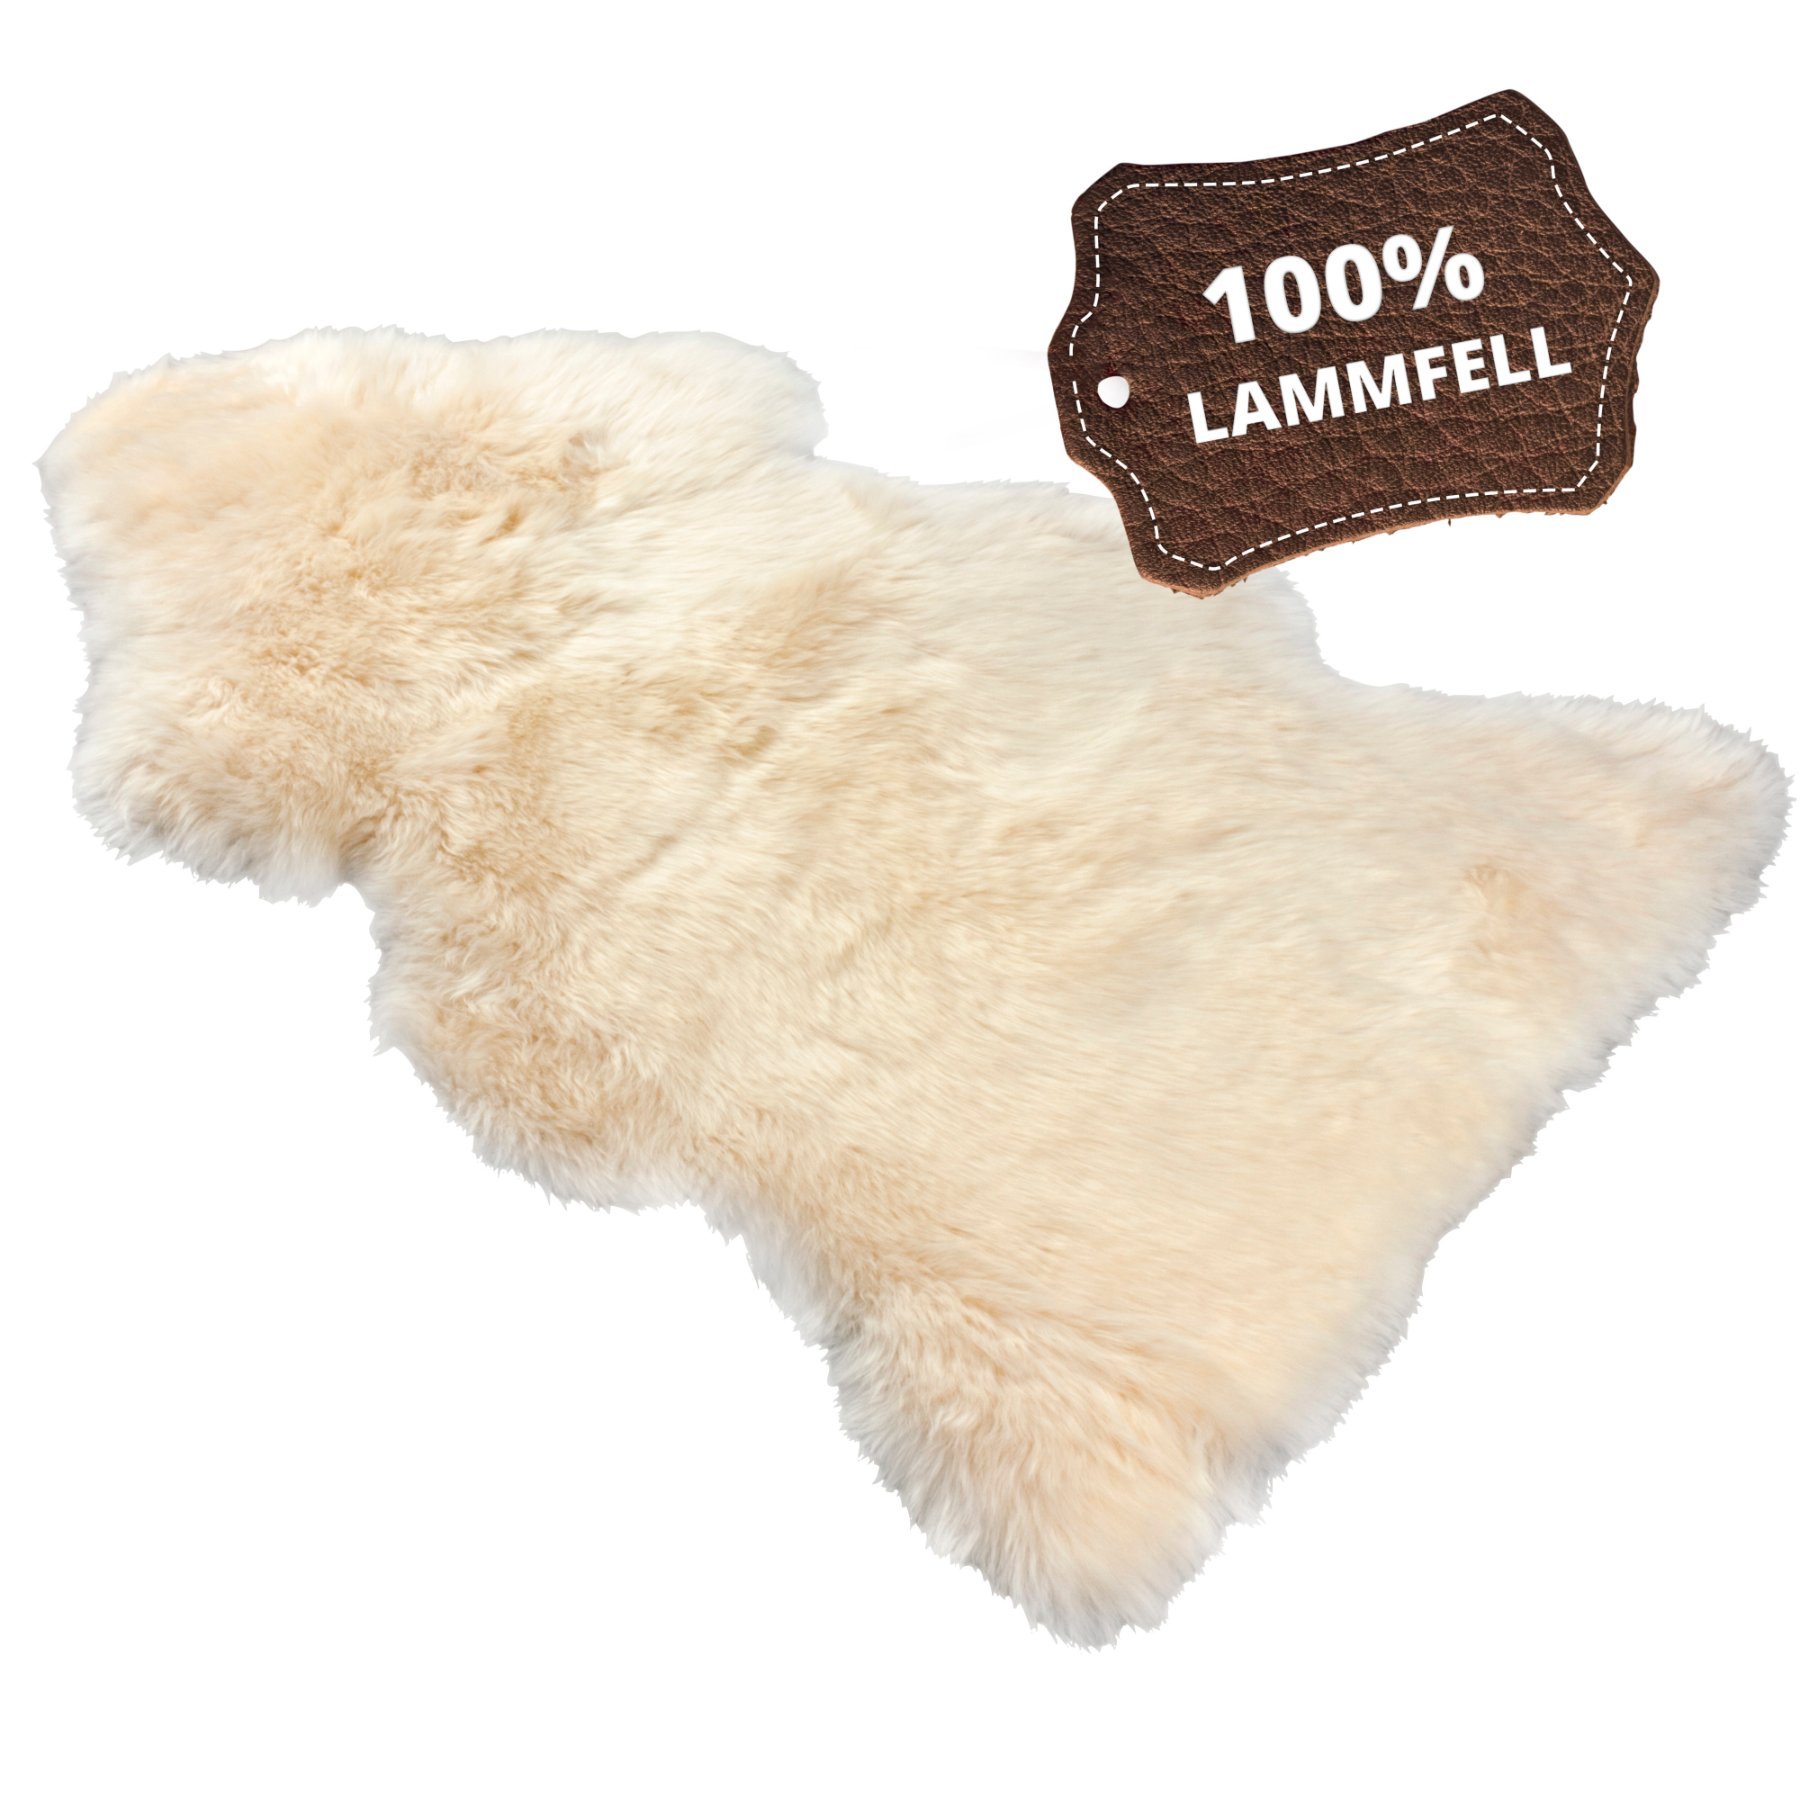 Tapis en peau d'agneau Beal beige 100-105cm en peau d'agneau 100% naturelle, hauteur de laine 50mm, idéal pour le salon et la chambre à coucher